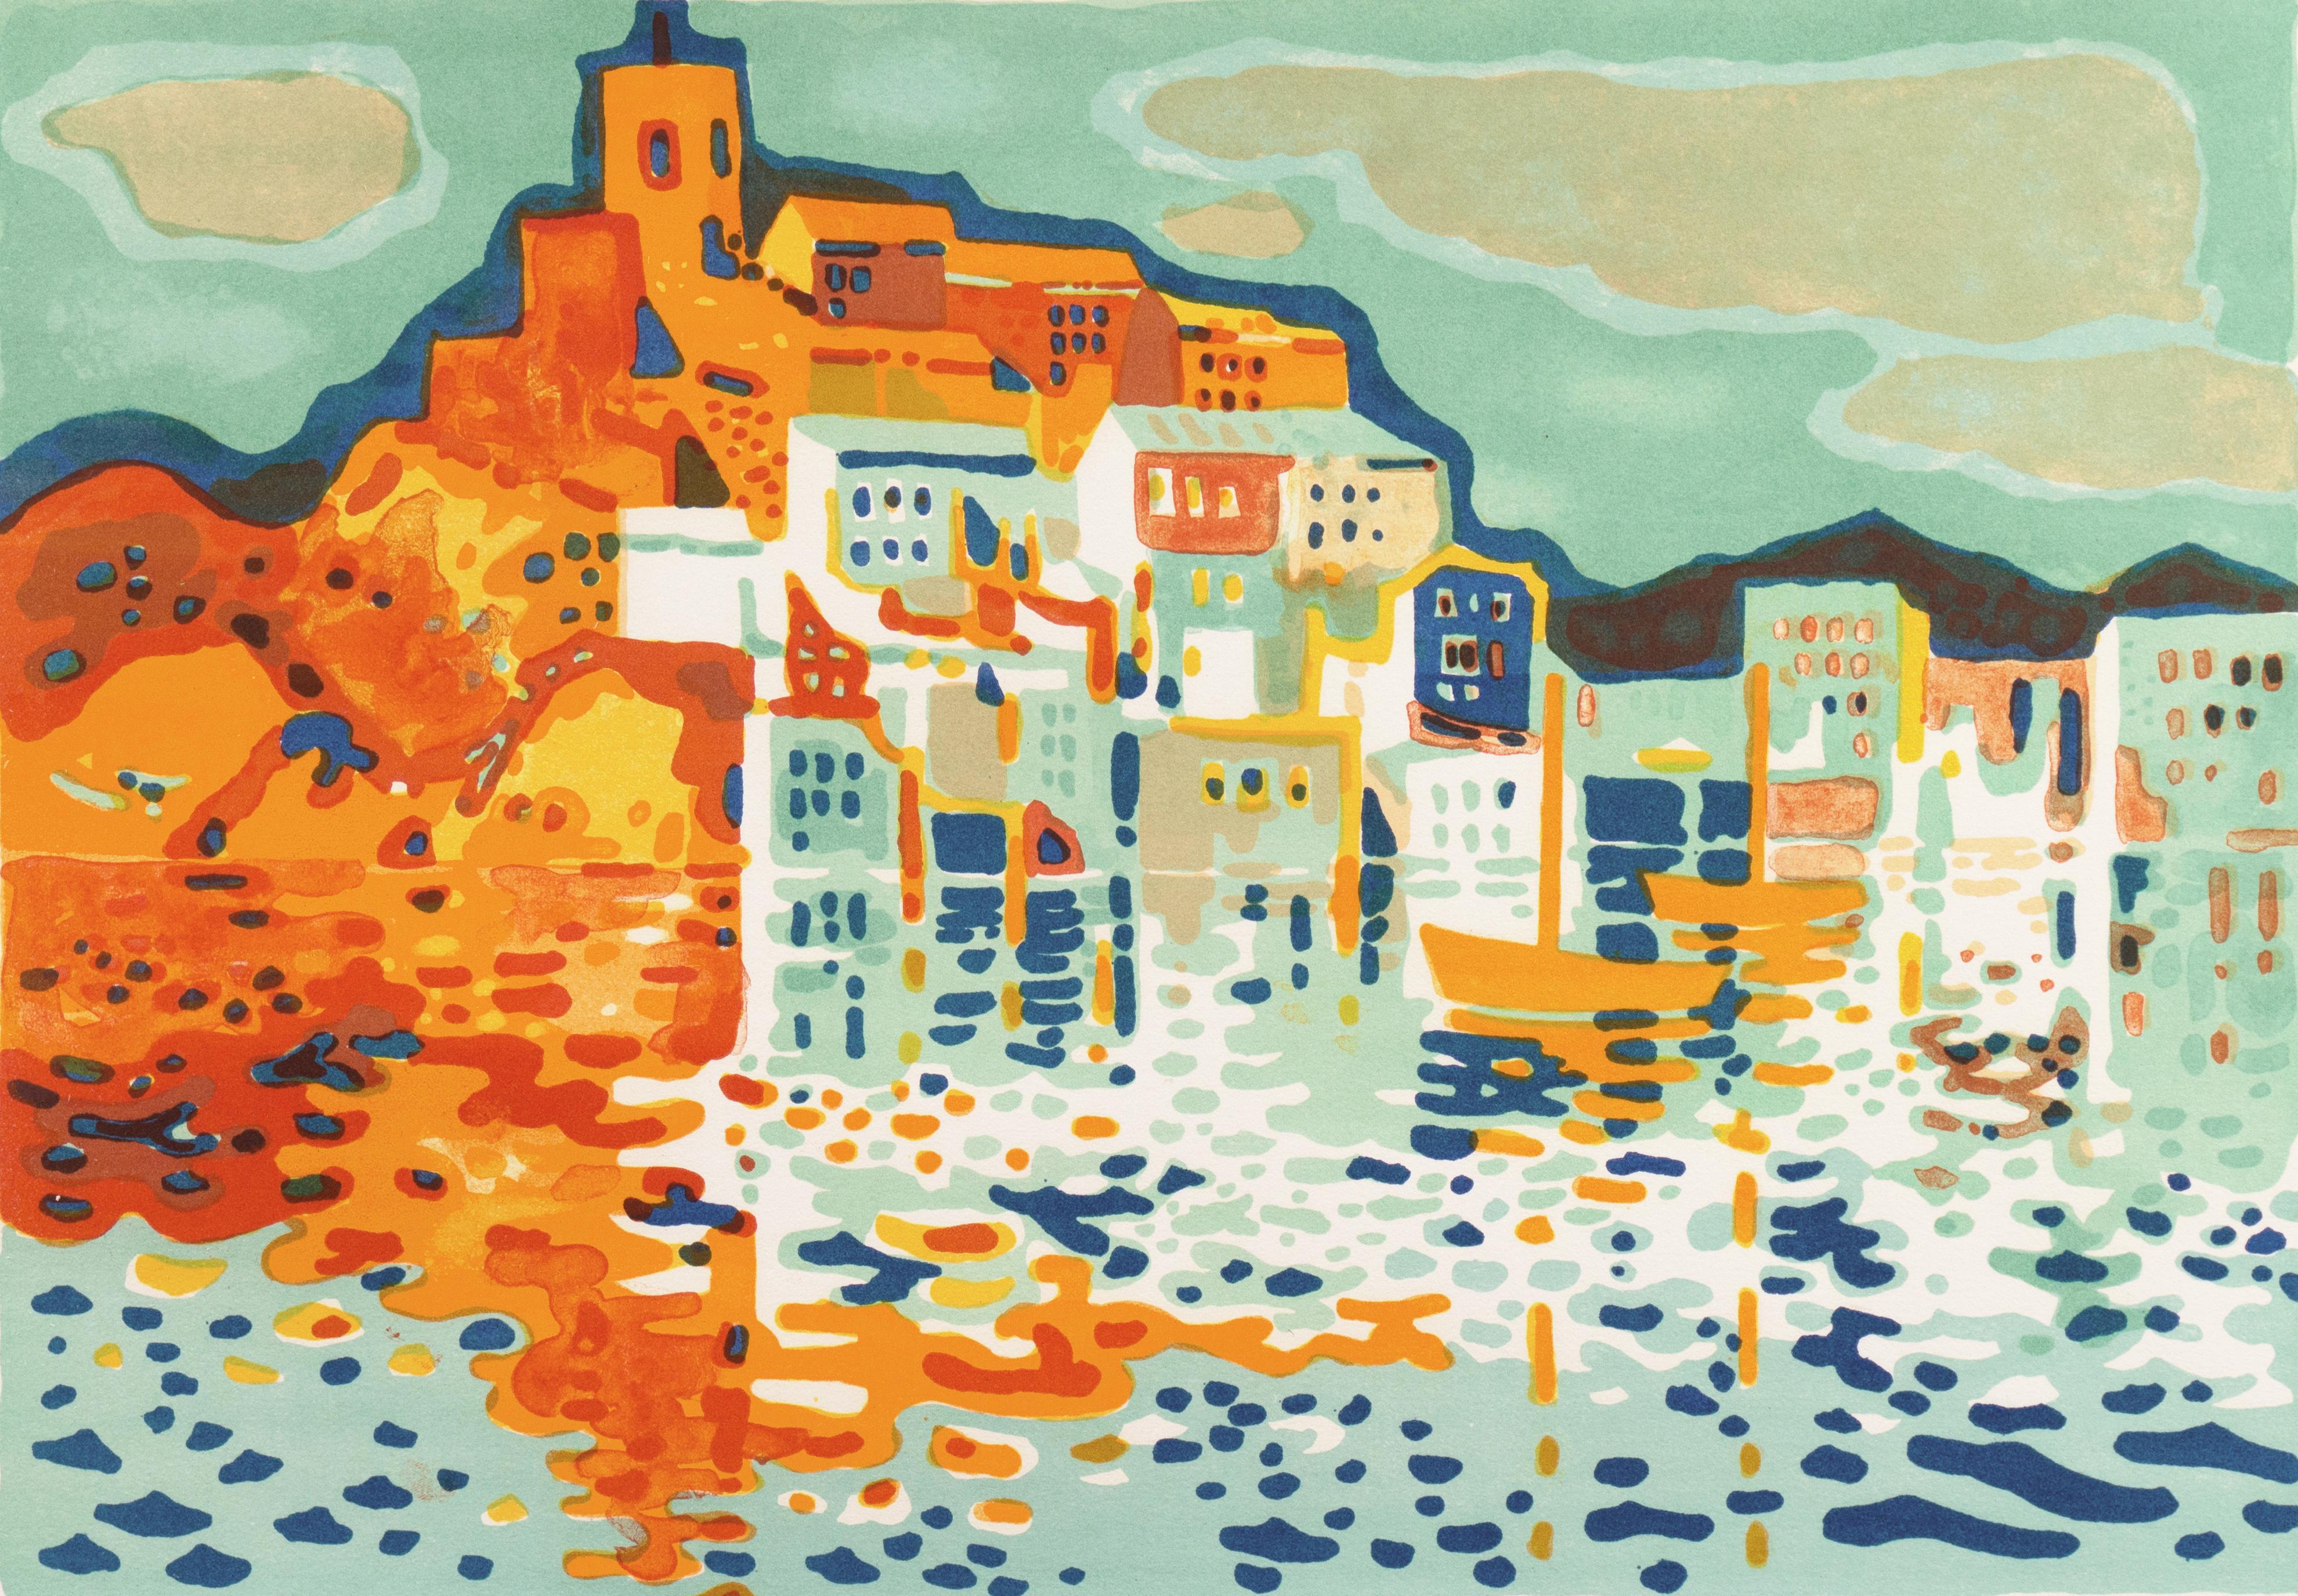 Guy Charon Landscape Painting - 'Breton Harbor', Post-Impressionist Coastal Scene, Salon d'Automne, MAM Paris 